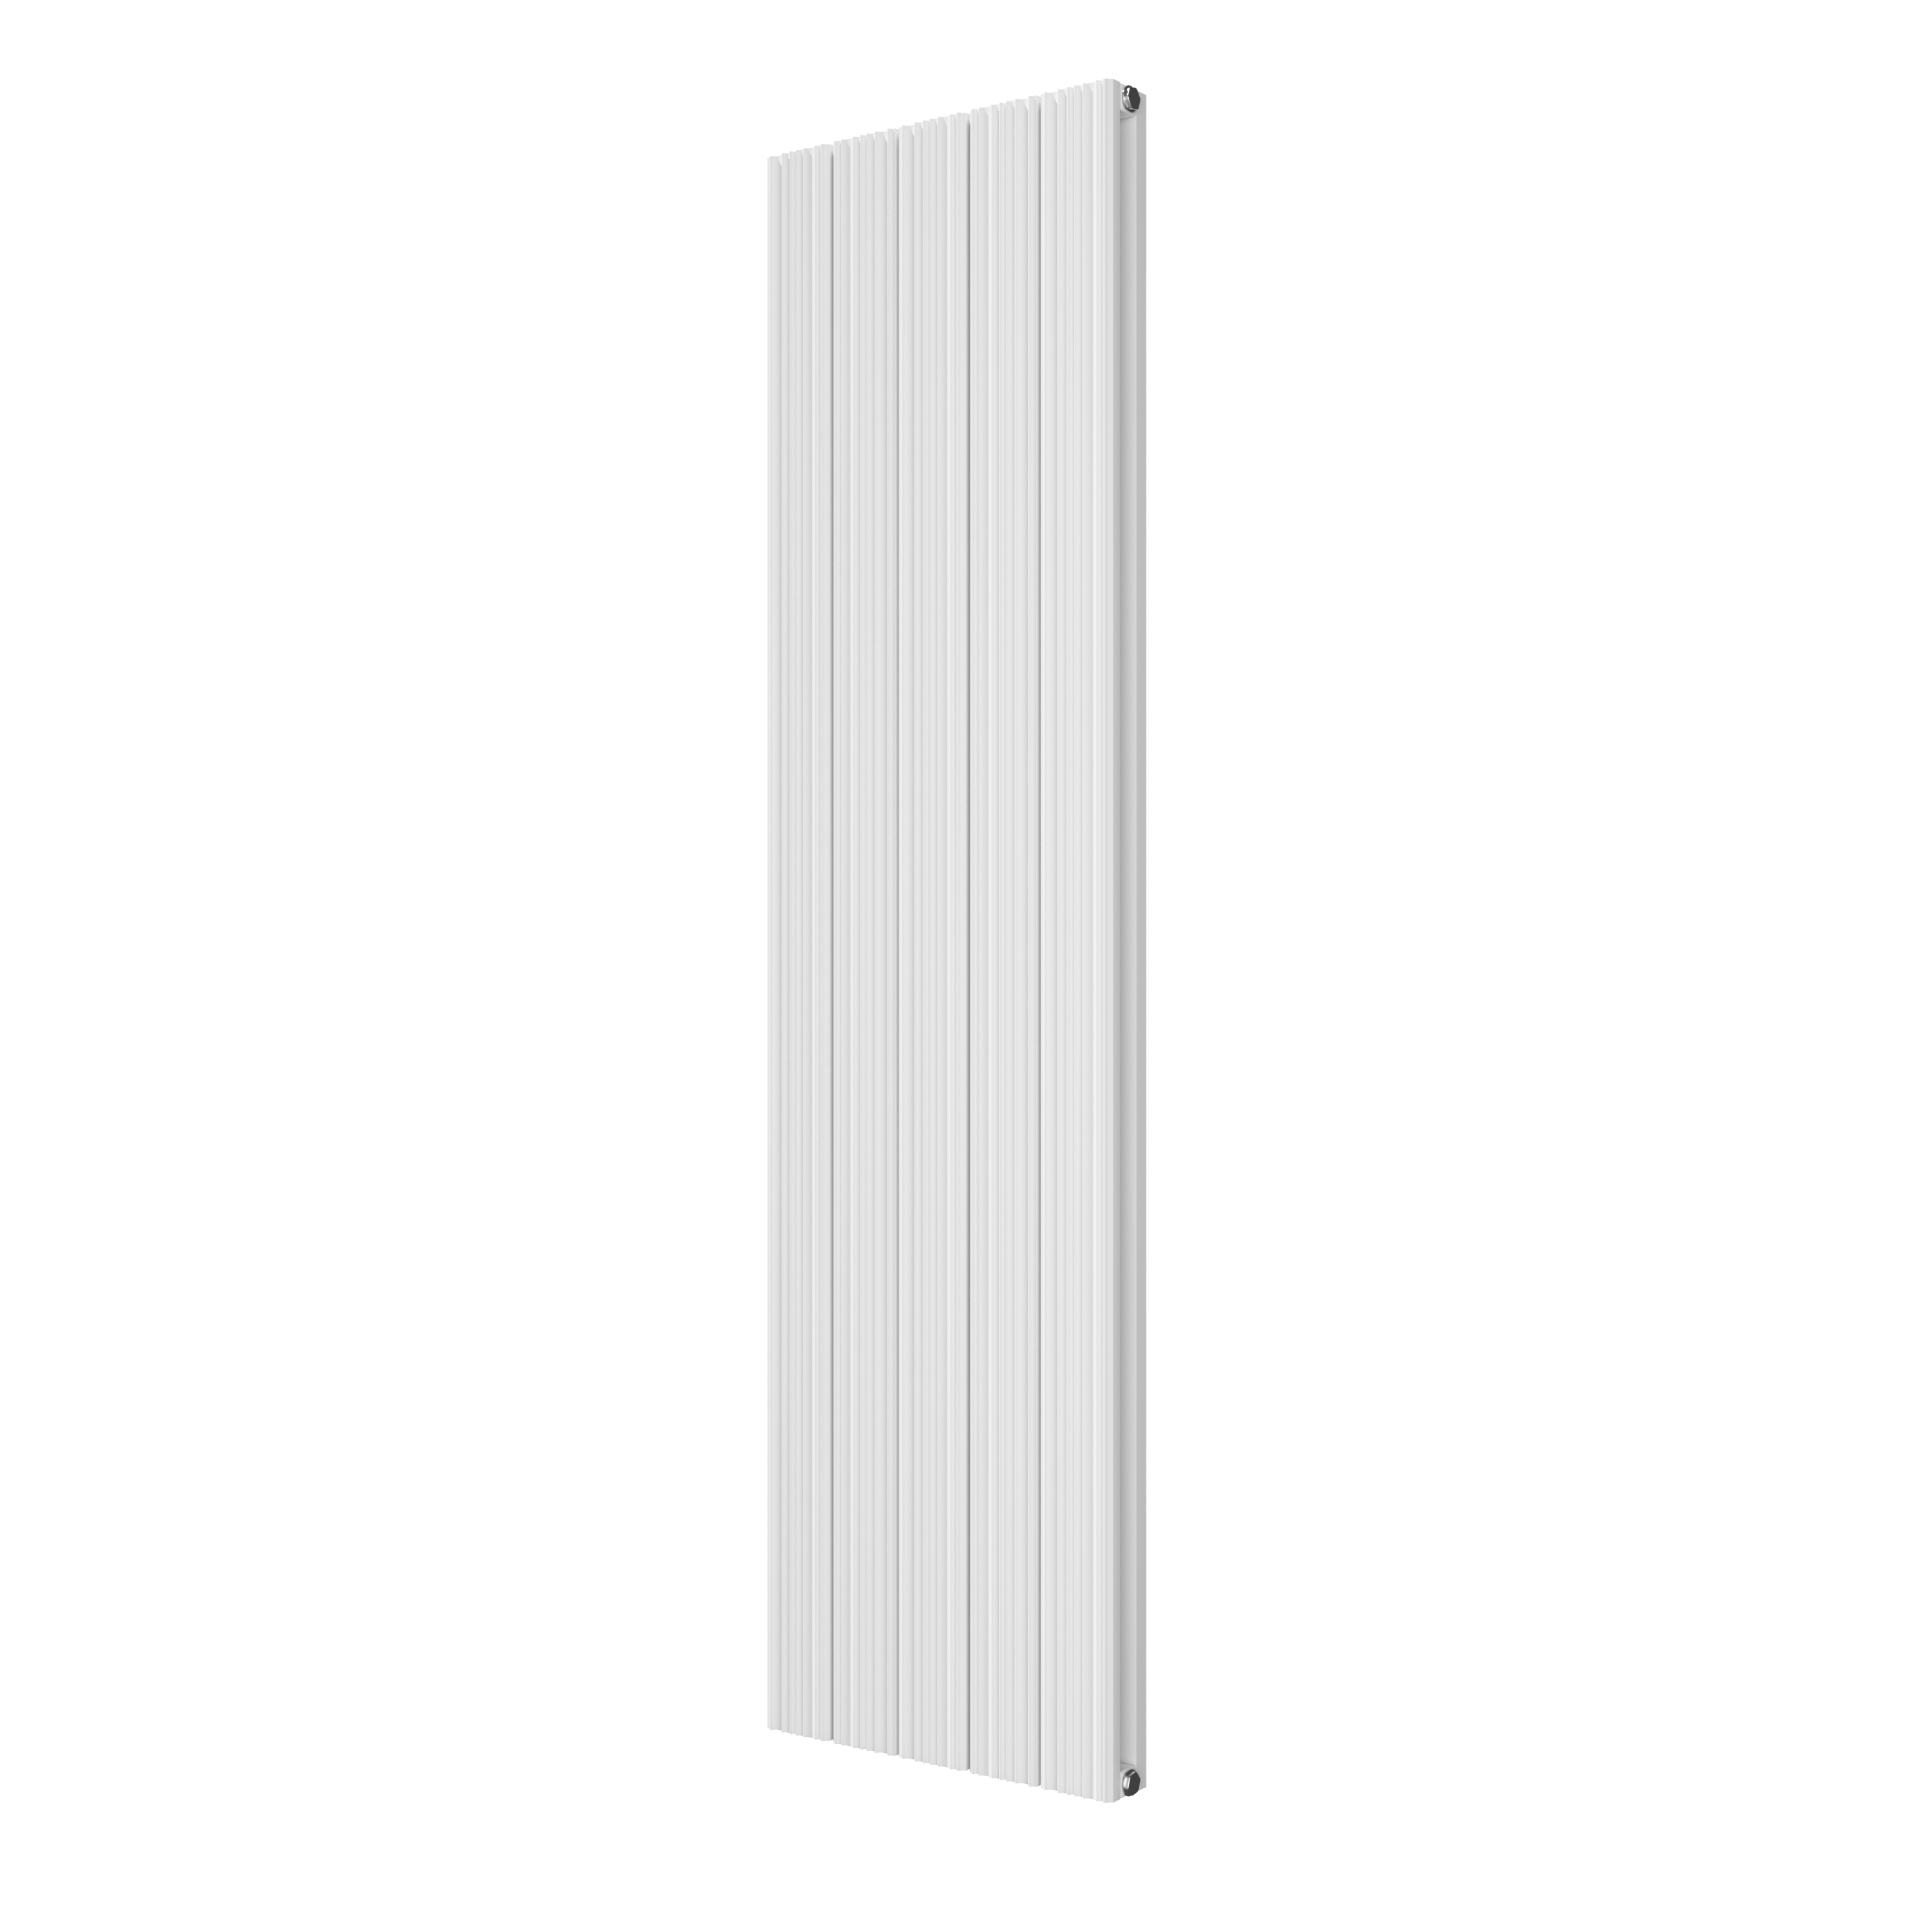 VIPERA Mares dubbele handdoekradiator 47 x 180 cm centrale verwarming mat wit zij- en middenaansluiting 1,550W